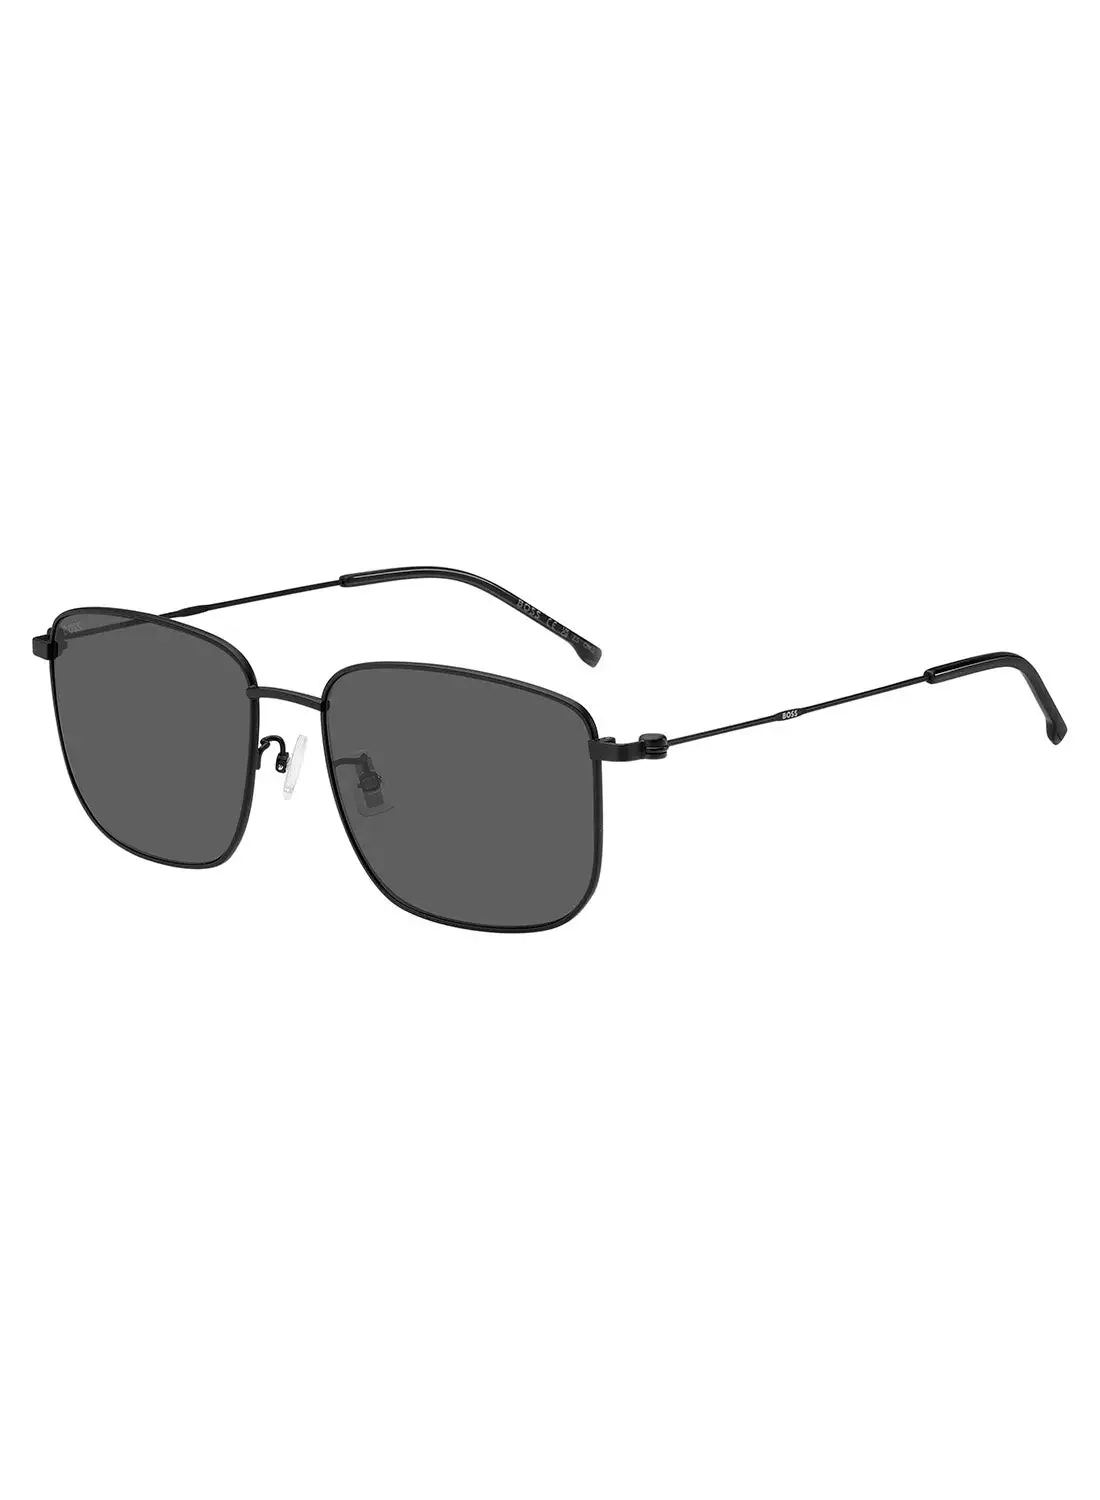 HUGO BOSS Men's UV Protection Rectangular Sunglasses - Boss 1619/F/S Black Millimeter - Lens Size: 58 Mm